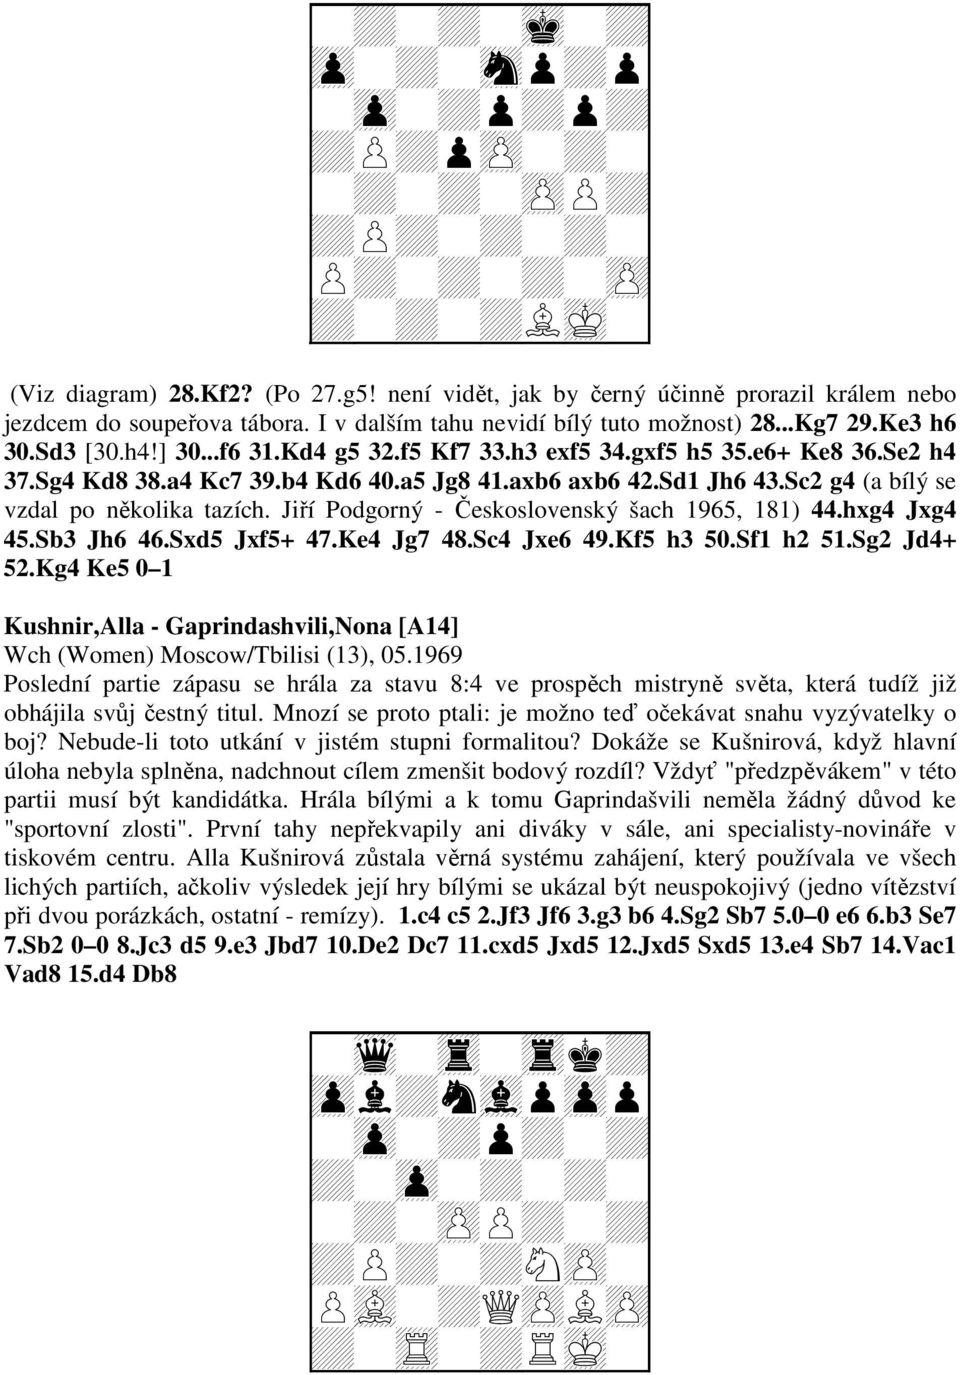 axb6 axb6 42.Sd1 Jh6 43.Sc2 g4 (a bílý se vzdal po několika tazích. Jiří Podgorný - Československý šach 1965, 181) 44.hxg4 Jxg4 45.Sb3 Jh6 46.Sxd5 Jxf5+ 47.Ke4 Jg7 48.Sc4 Jxe6 49.Kf5 h3 50.Sf1 h2 51.